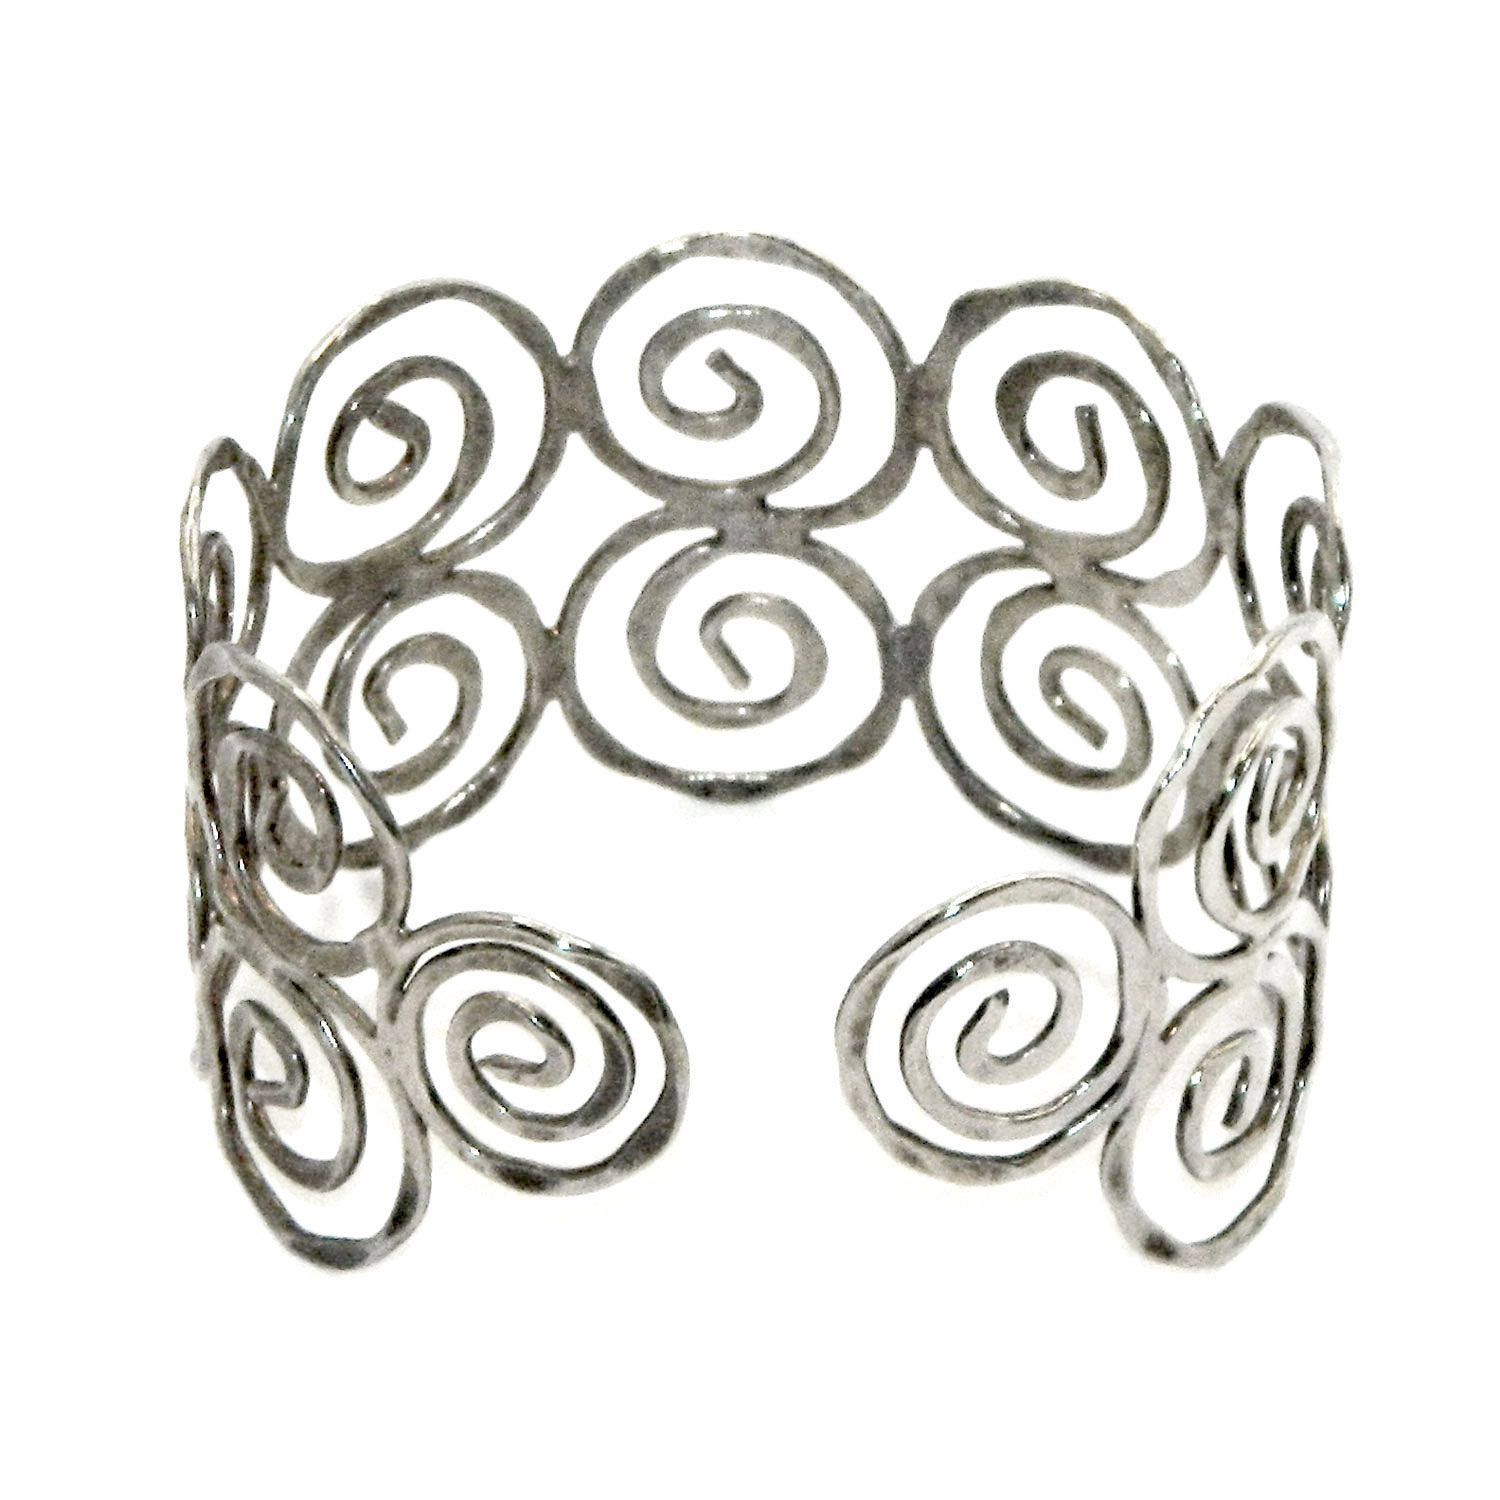 spiral hammered metal cuff bracelet